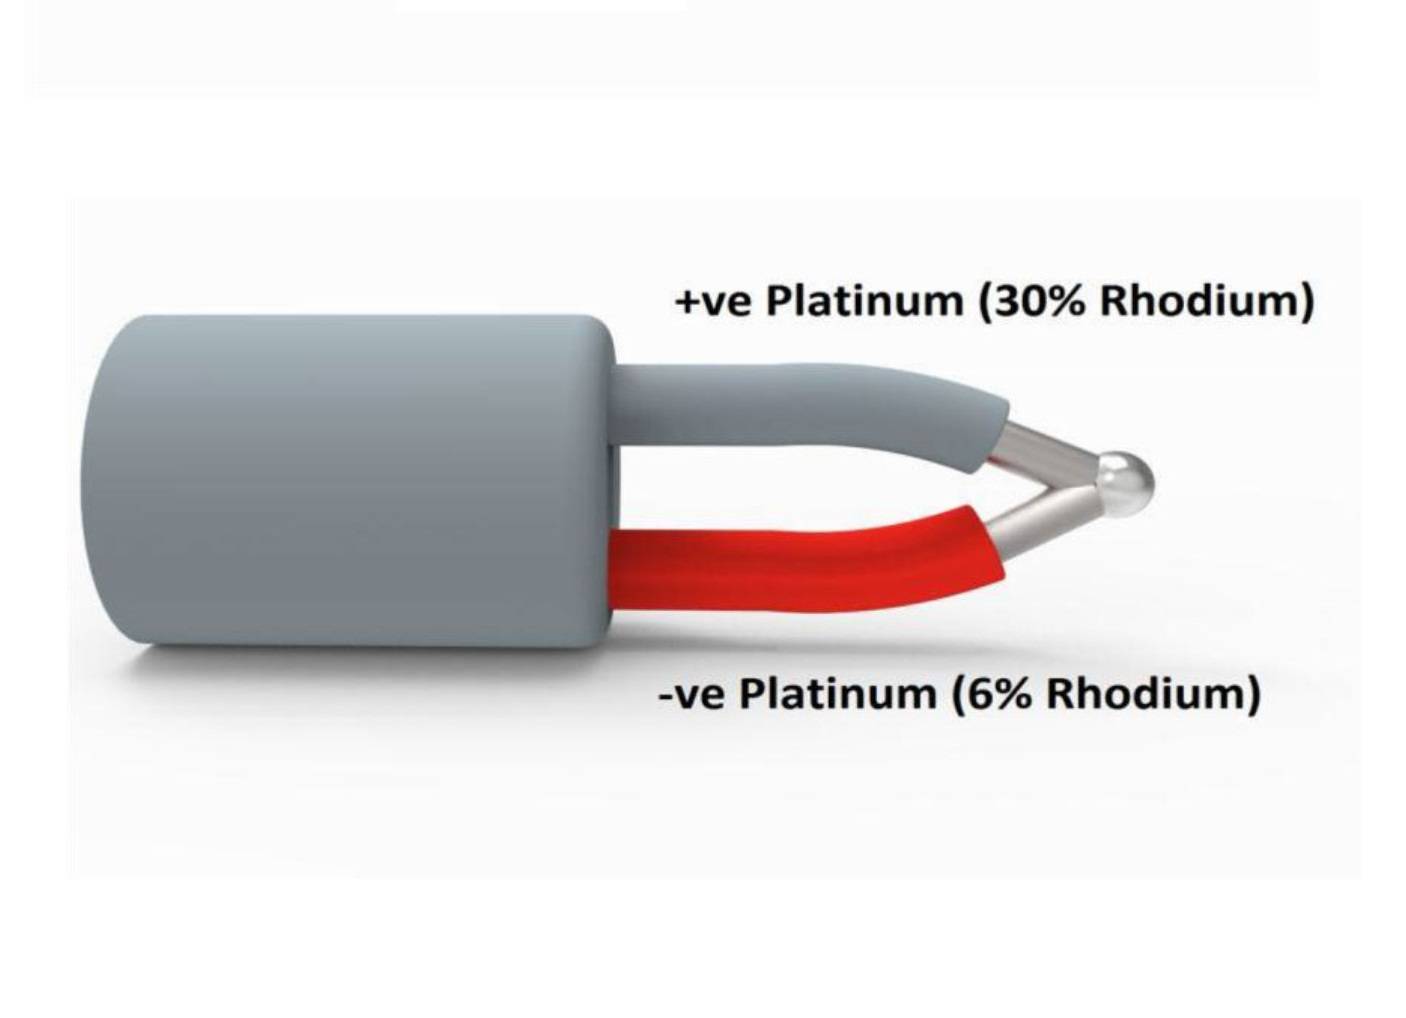 ترموکوپل پلاتین رادیوم (Platinum Rhodium Thermocouple) چیست؟